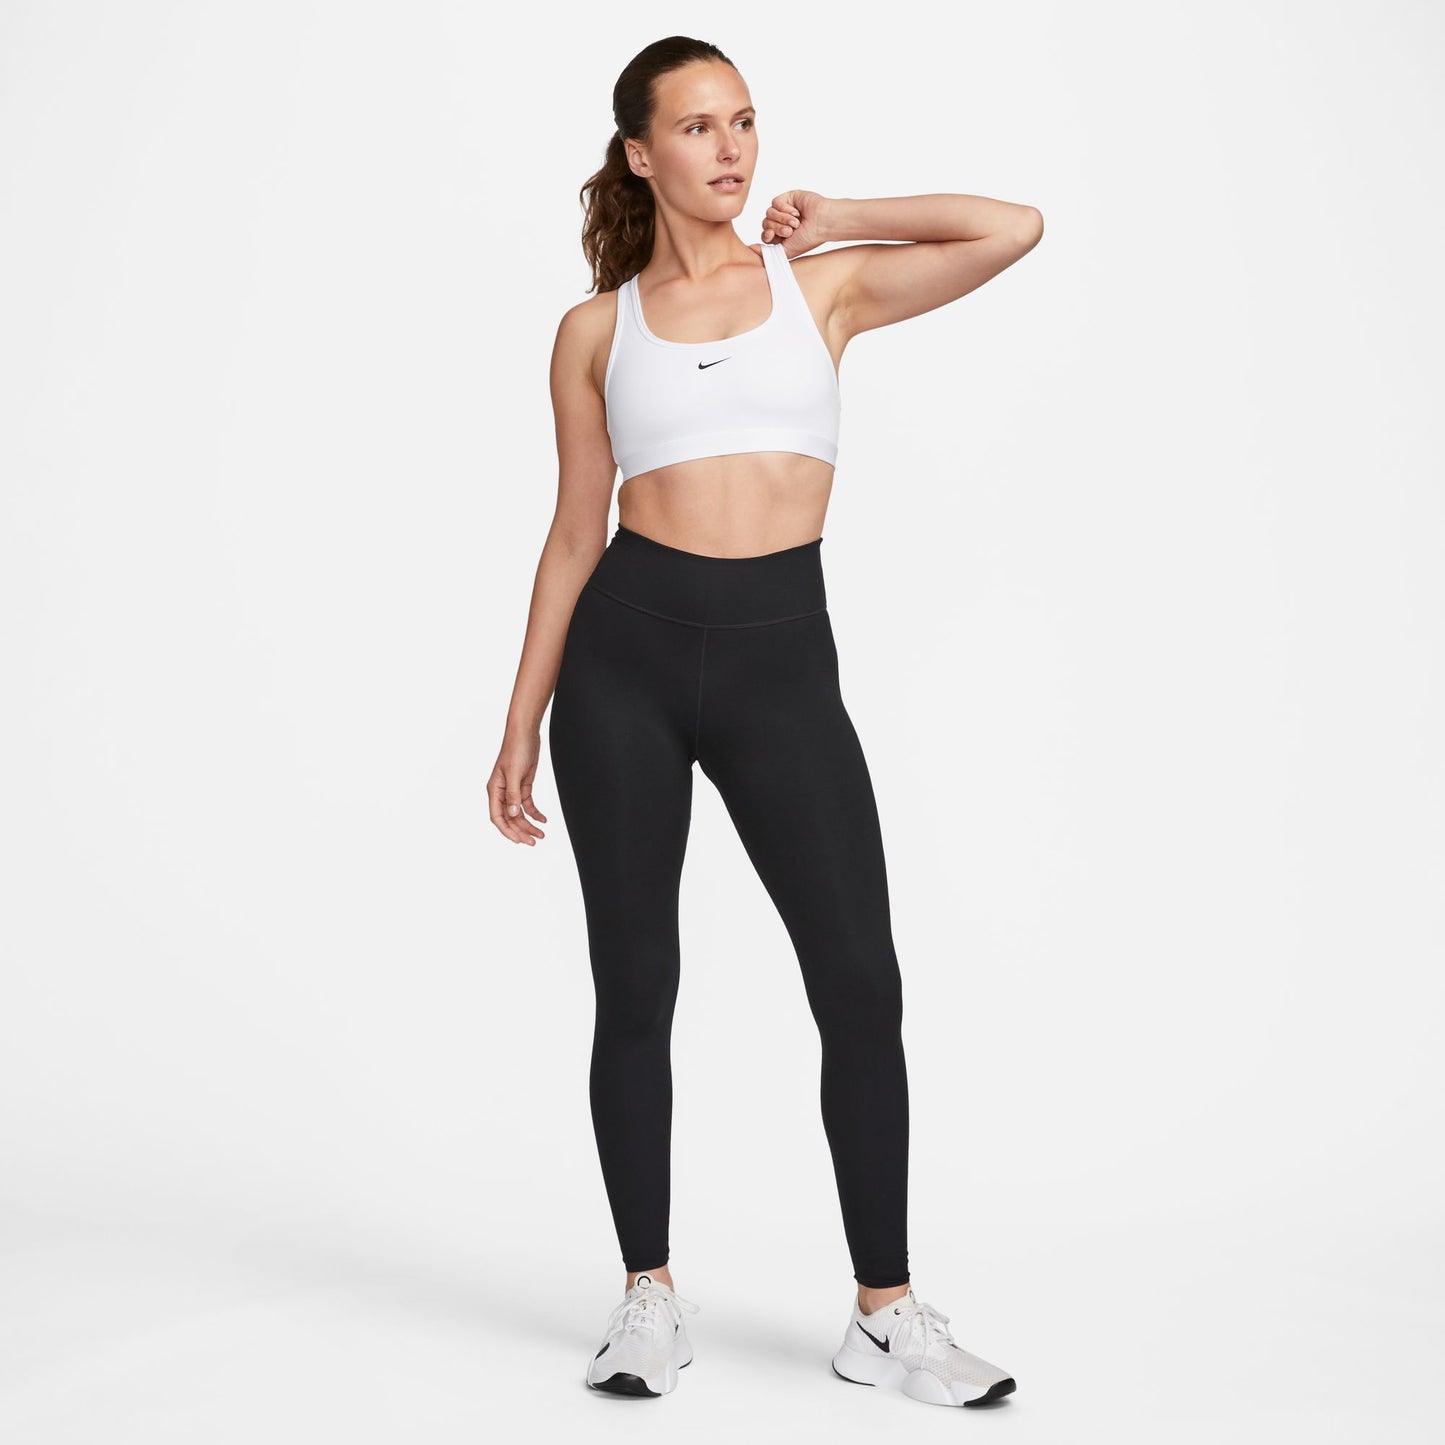 Nike Swoosh Light Support Women's Non-Padded White Sports Bra